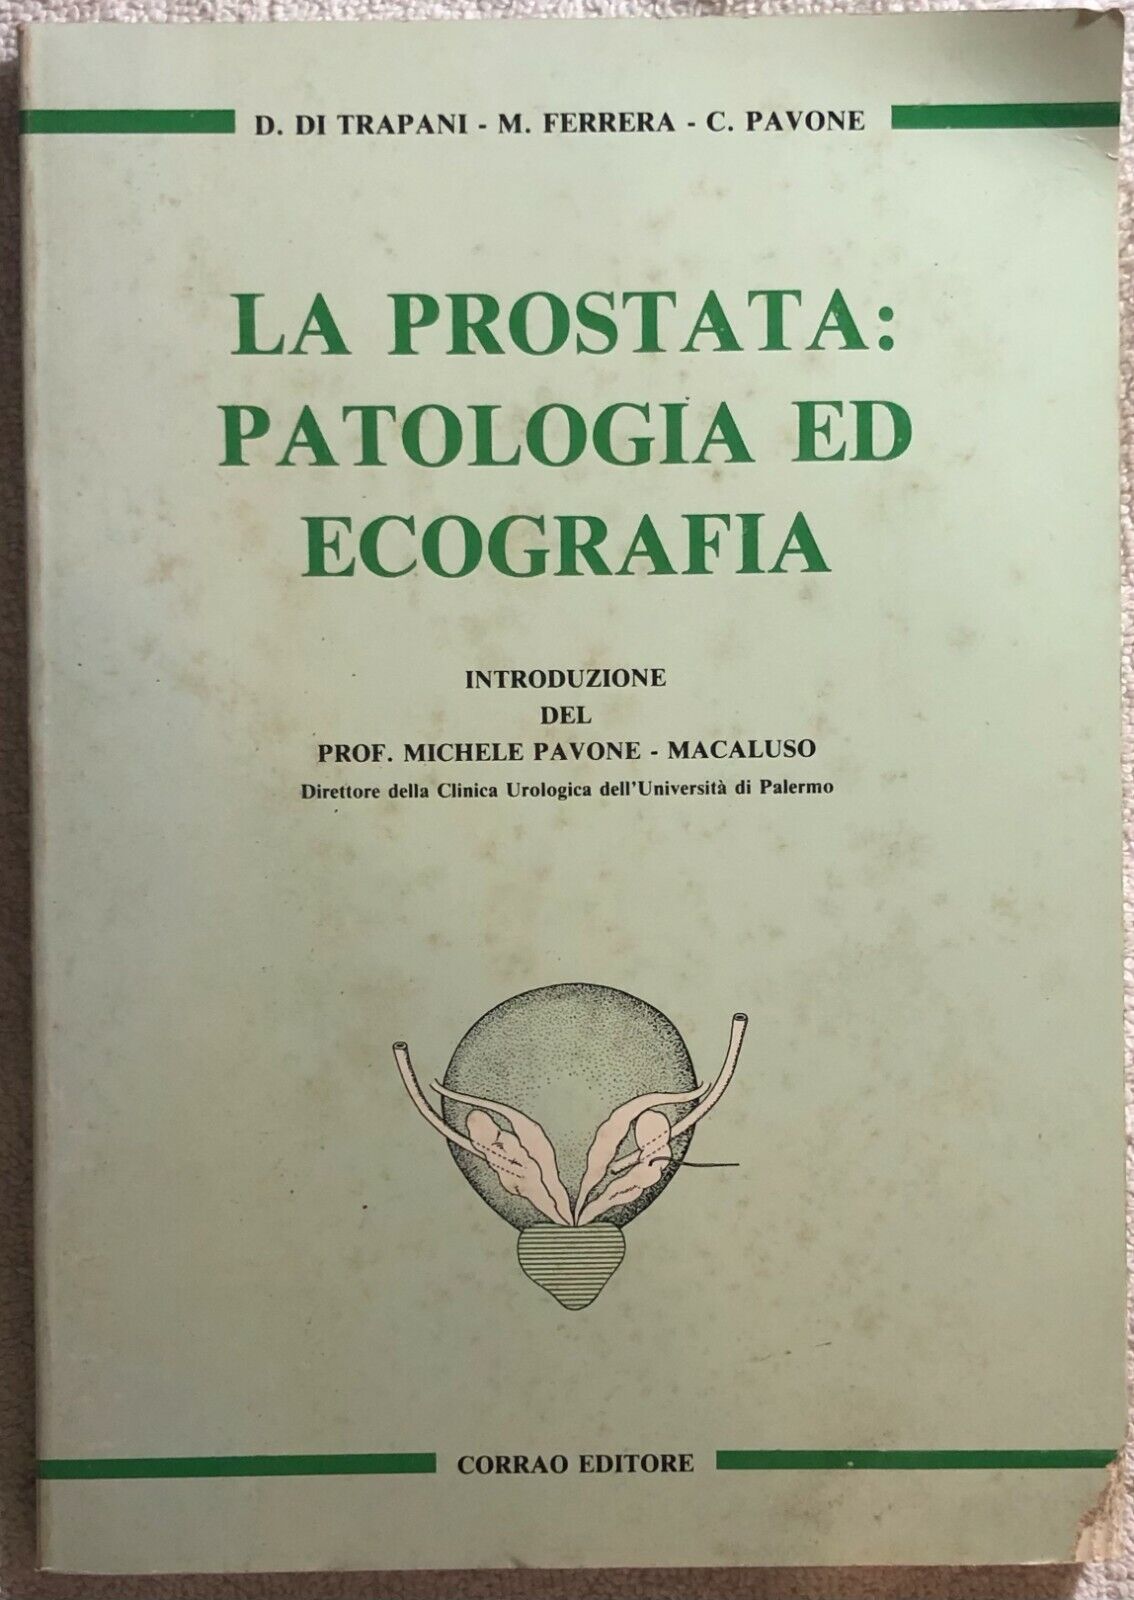 La prostata: patologia ed ecografia di Di Trapani-ferrera-pavone,  1988,  Corrao